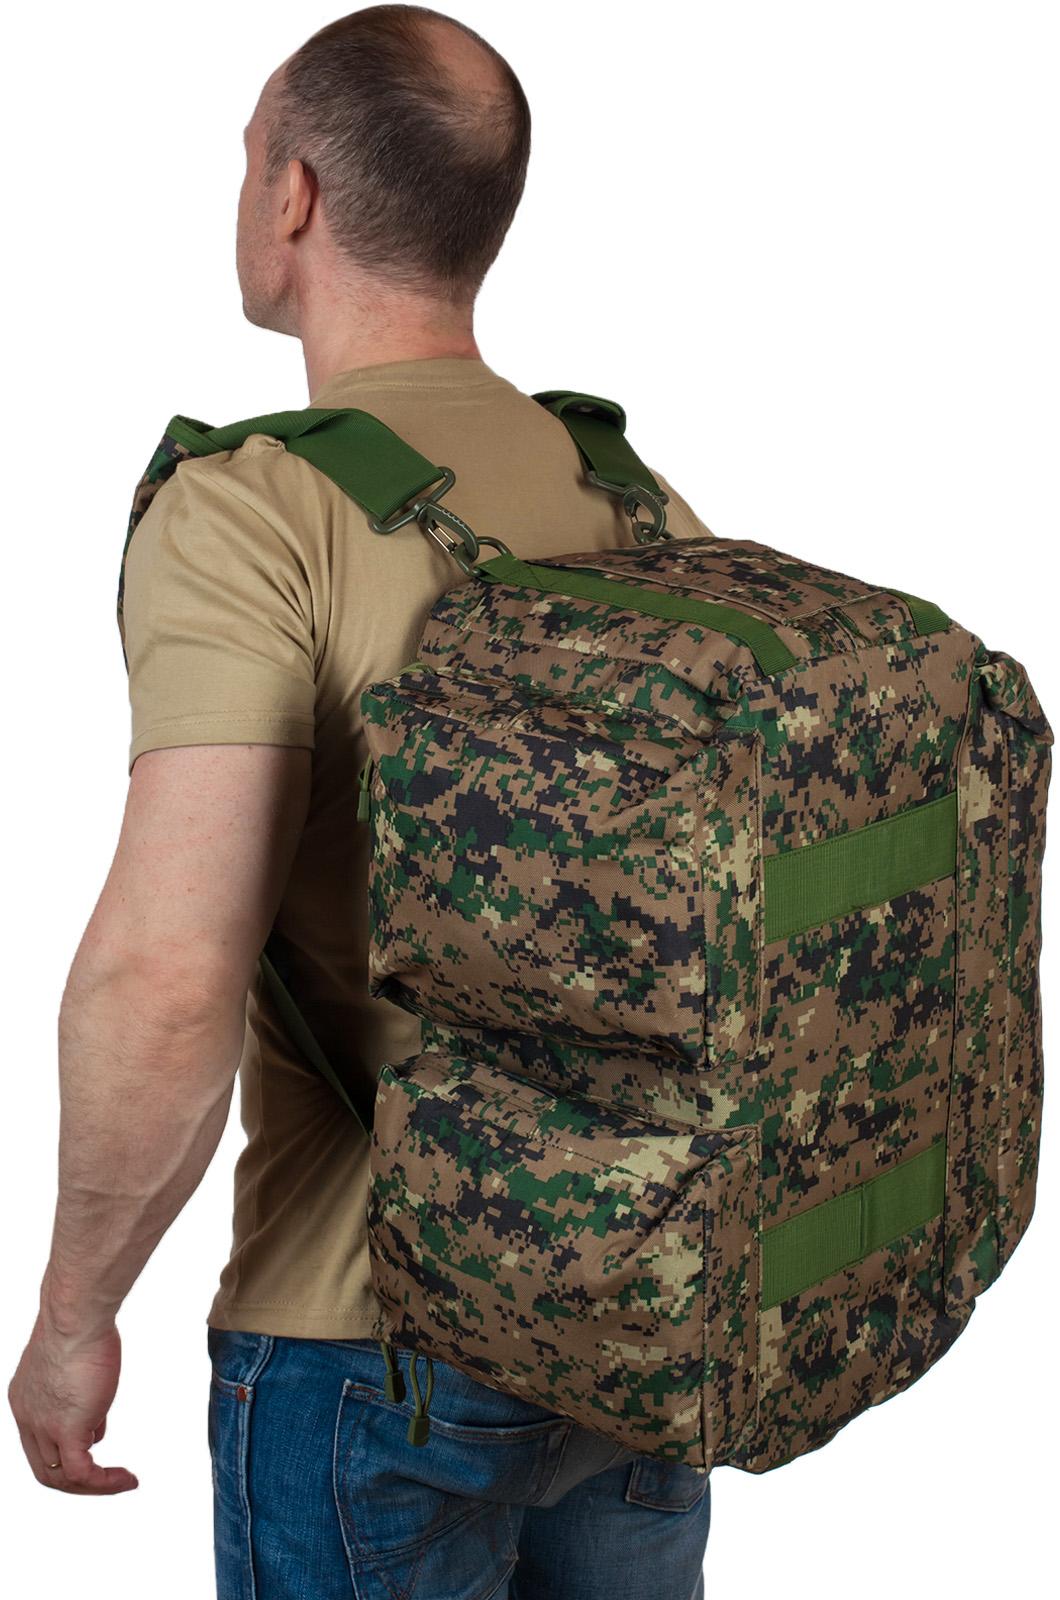 Армейская дорожная сумка с нашивкой ВКС 